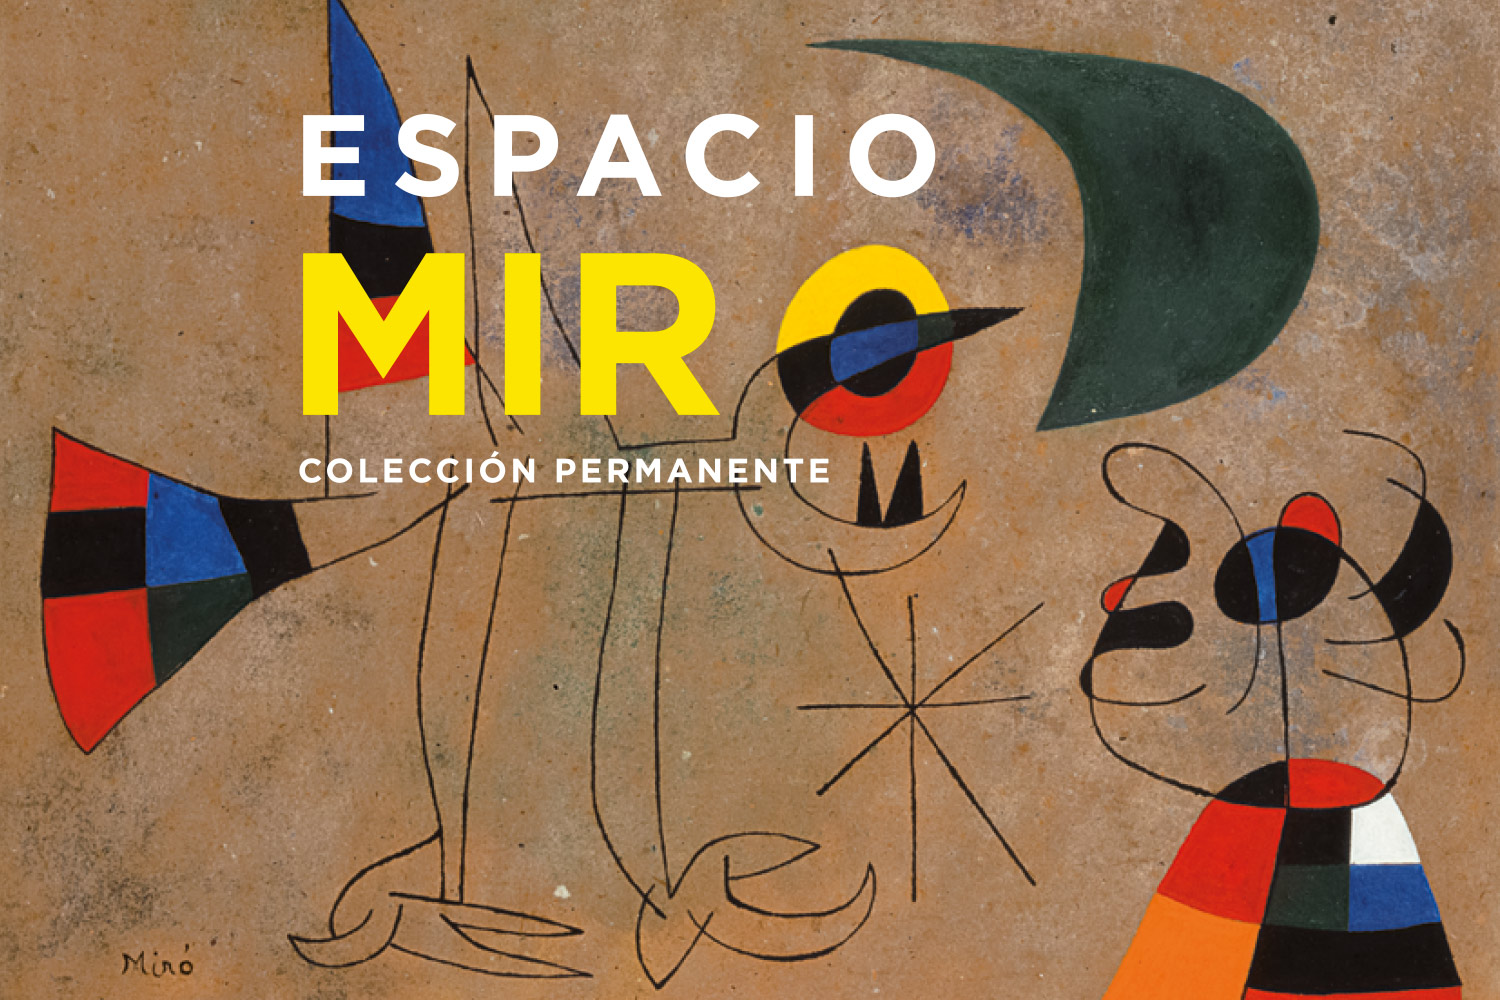 Enter modern art exhibition Espacio Miró